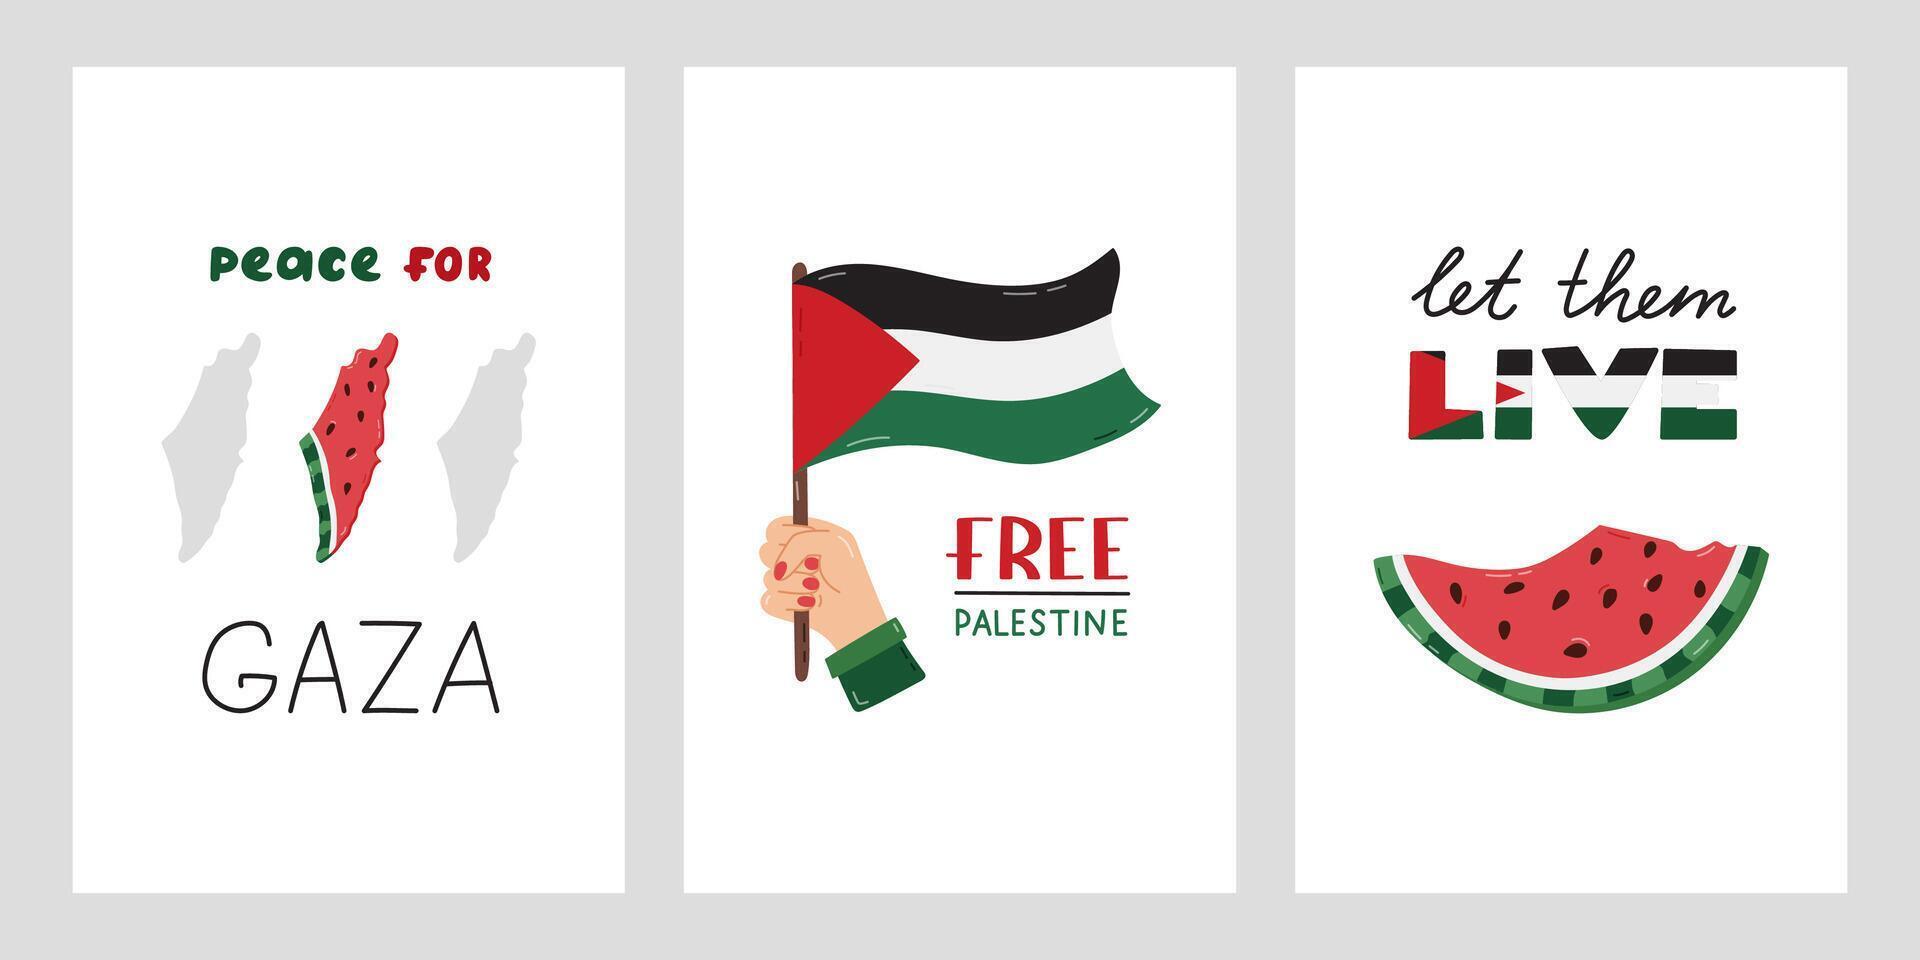 spara palestina uppsättning av posters med text och enkel hand dragen ClipArt av vattenmelon, flagga, Karta. begrepp av Stöd och stå med palestina. fred för gaza, fri palestina, låta dem leva. vektor